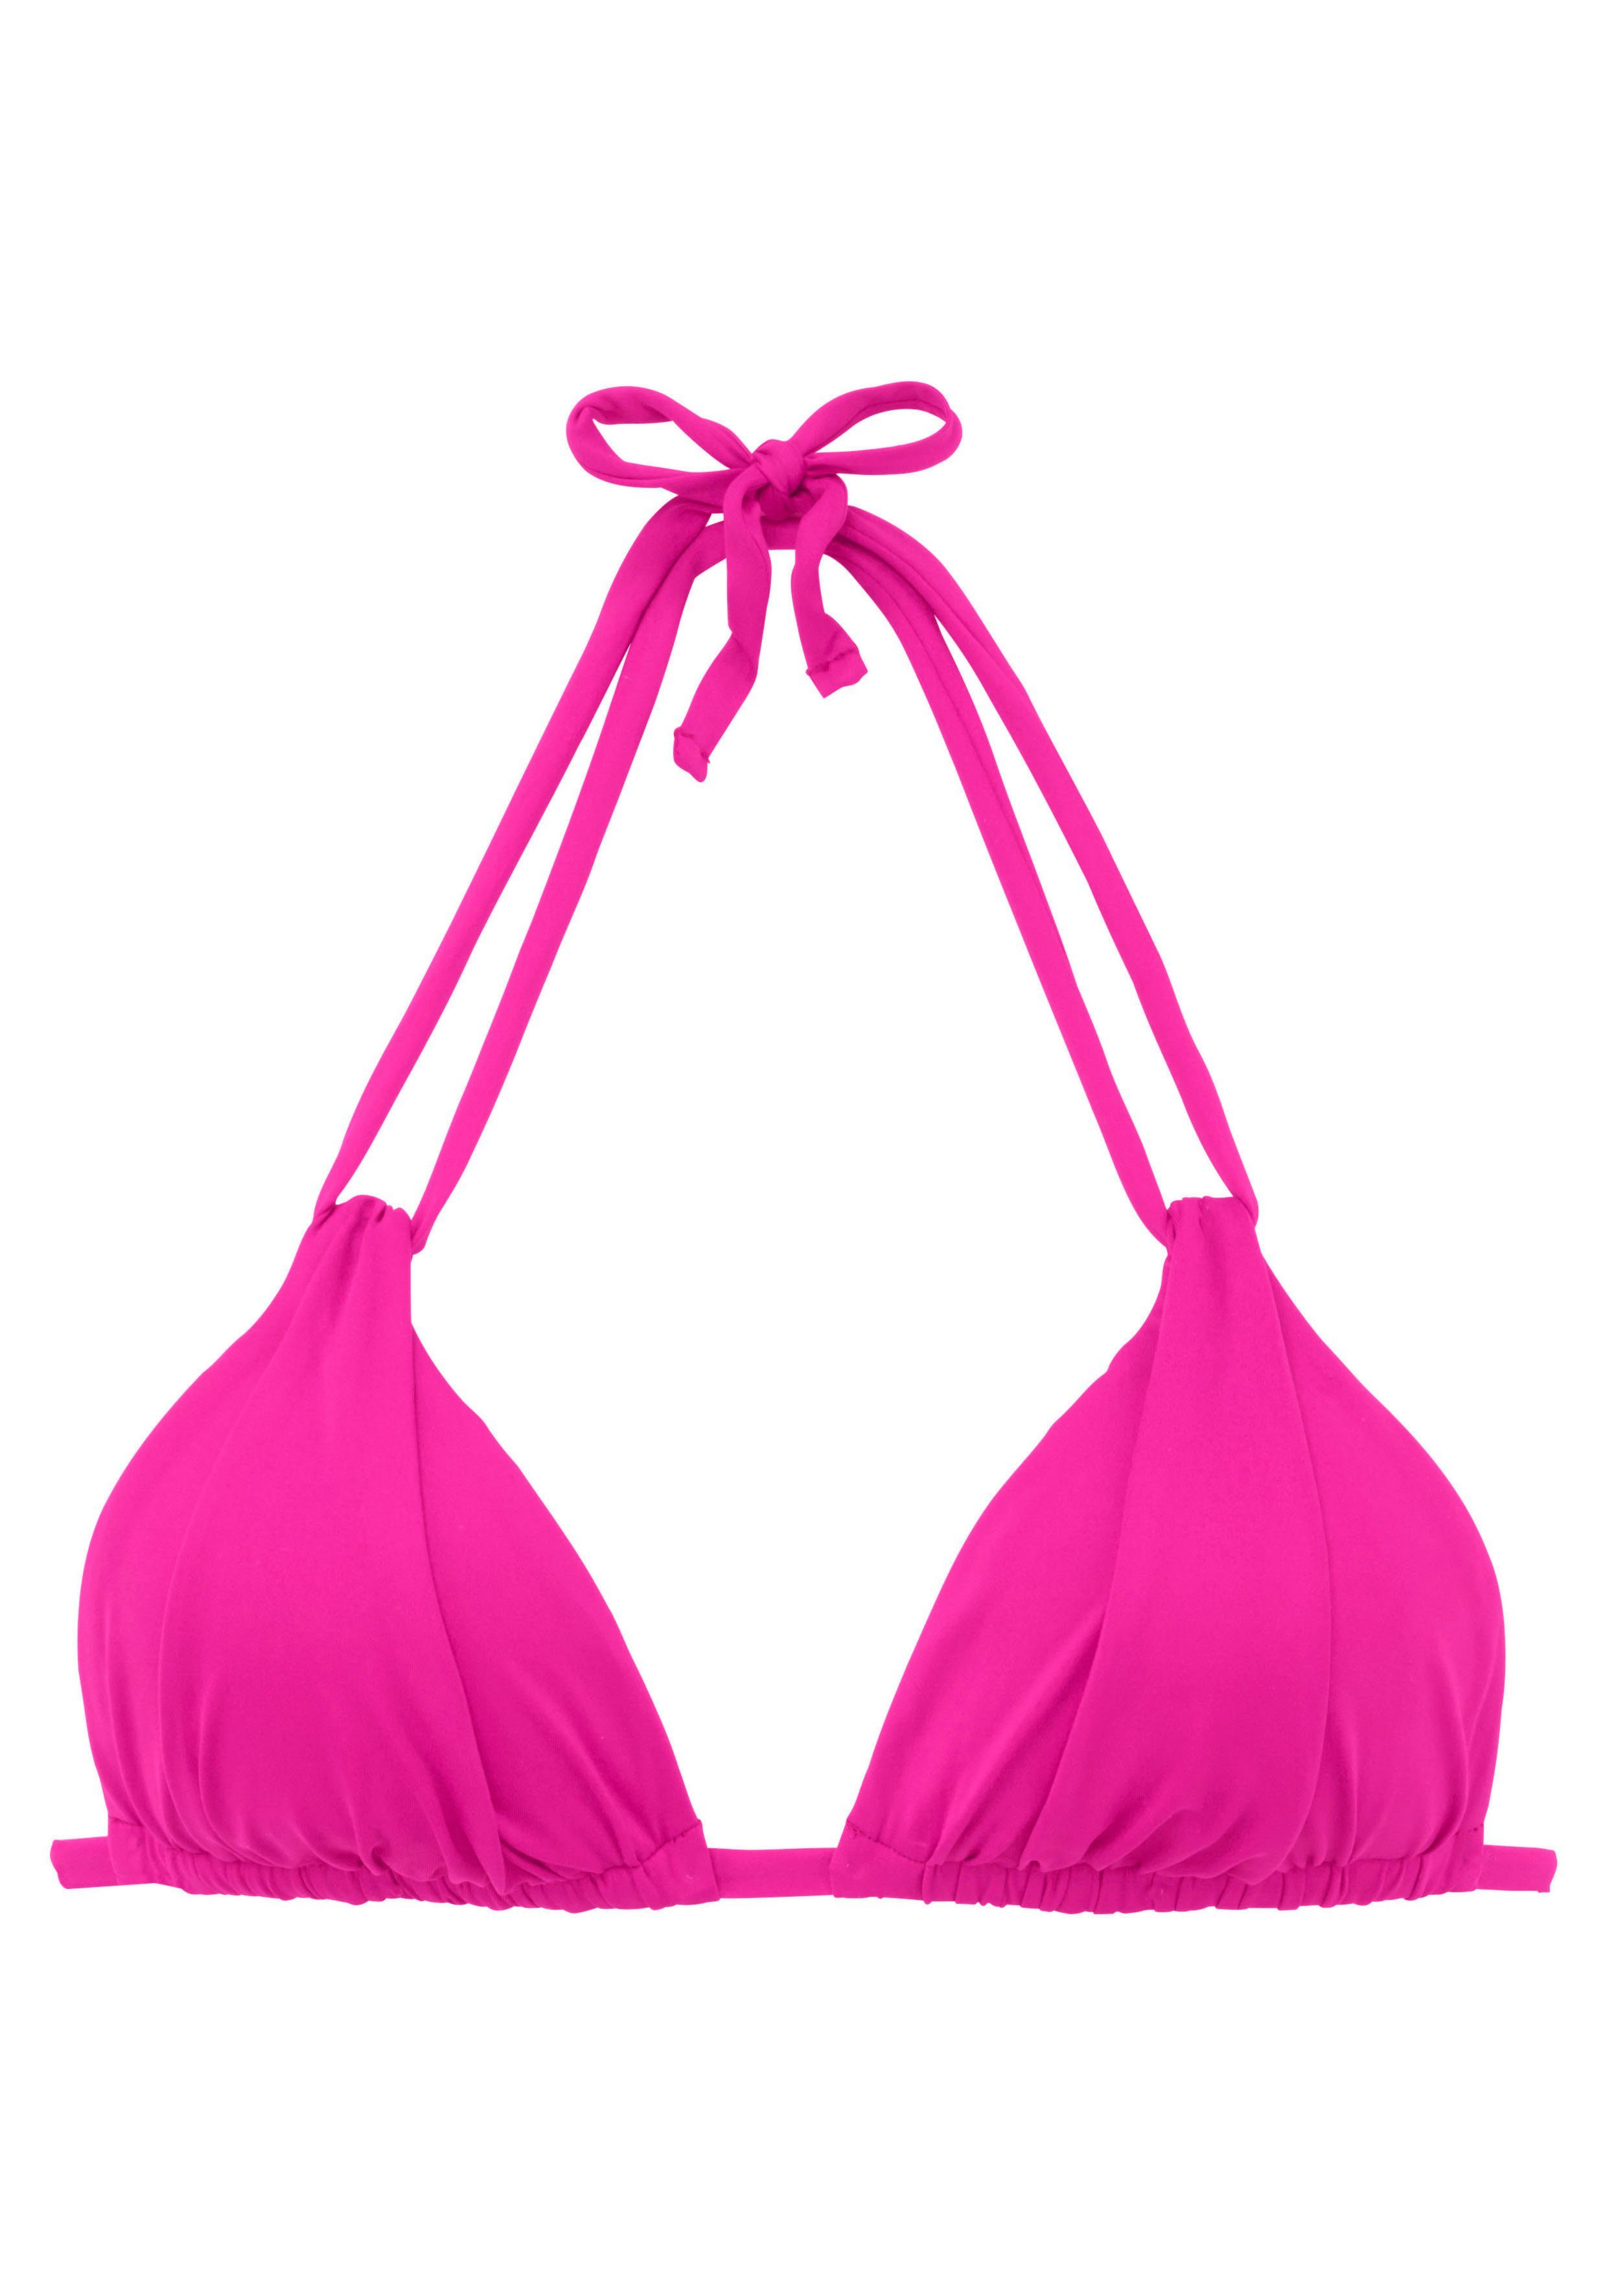 s.oliver red label beachwear triangel-bikinitop spain met plooi en dubbele bandjes roze